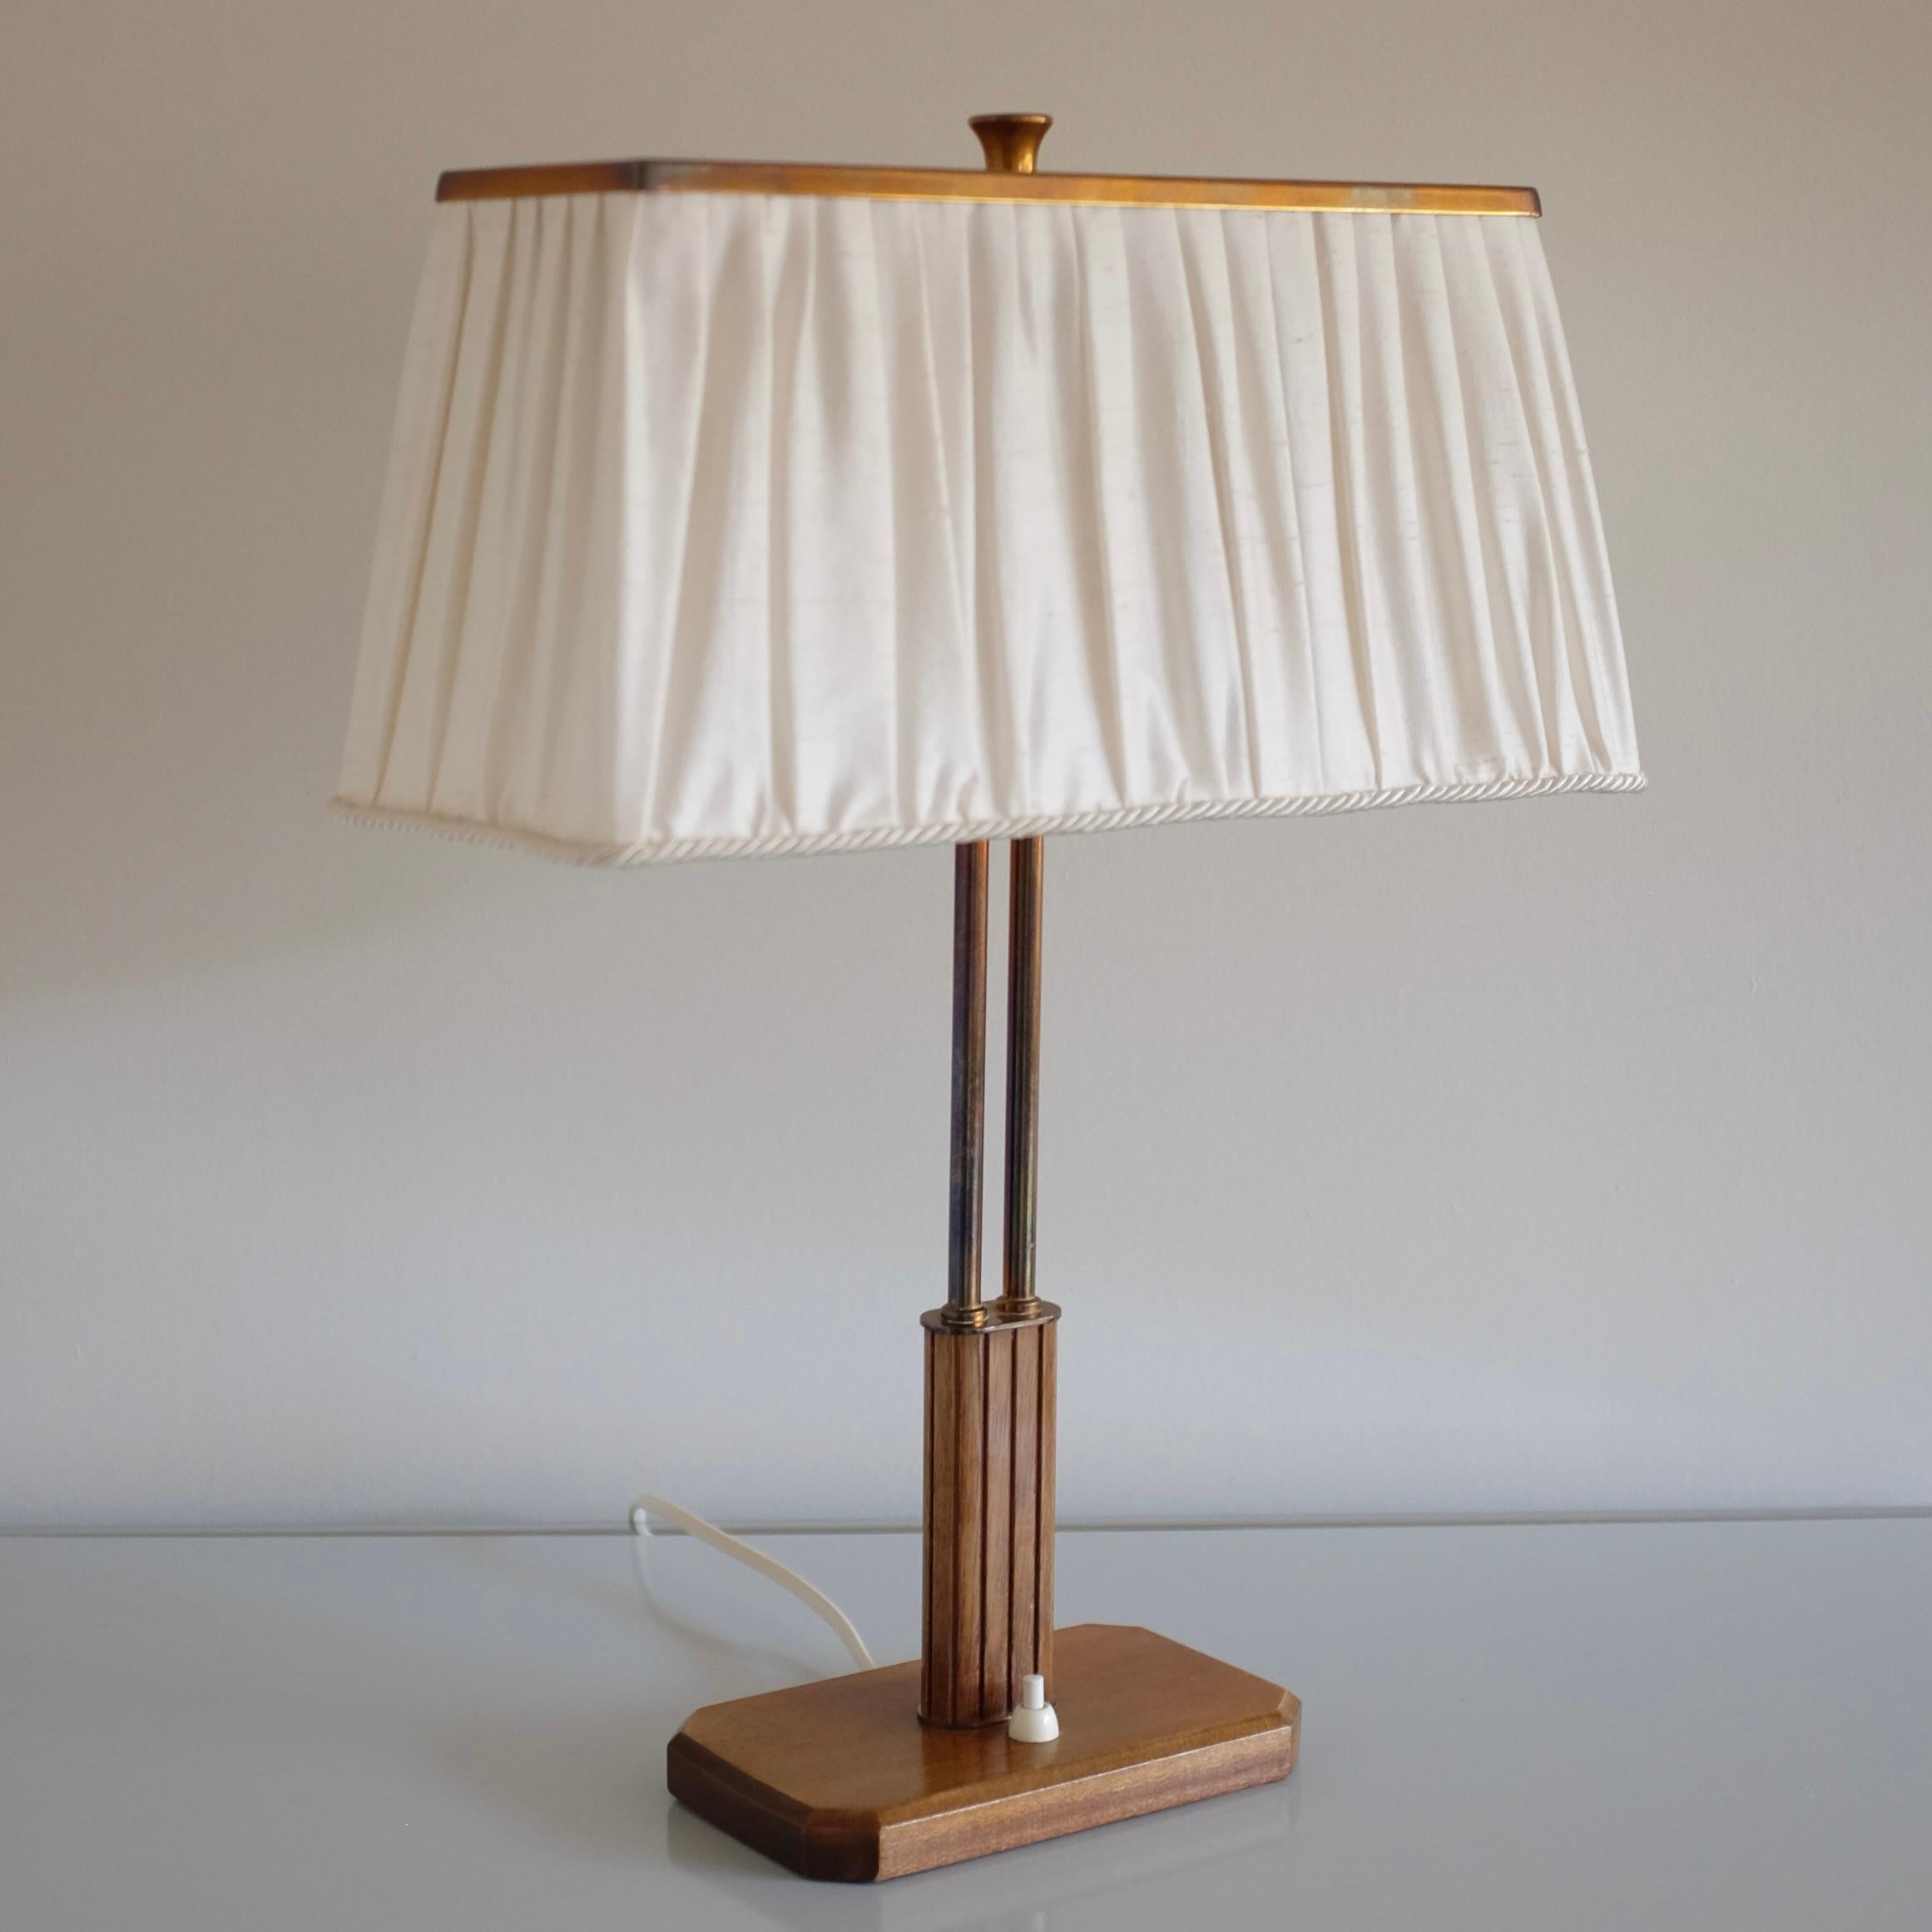 Magnifique lampe de table des années 1940, modèle 15485 de Böhlmarks, Suède, peut-être conçue par Harald Notini. Pied de lampe en bois avec détails sculptés et laiton. Il y a 2 lumières sous un abat-jour en soie surmonté d'une plaque en laiton et de